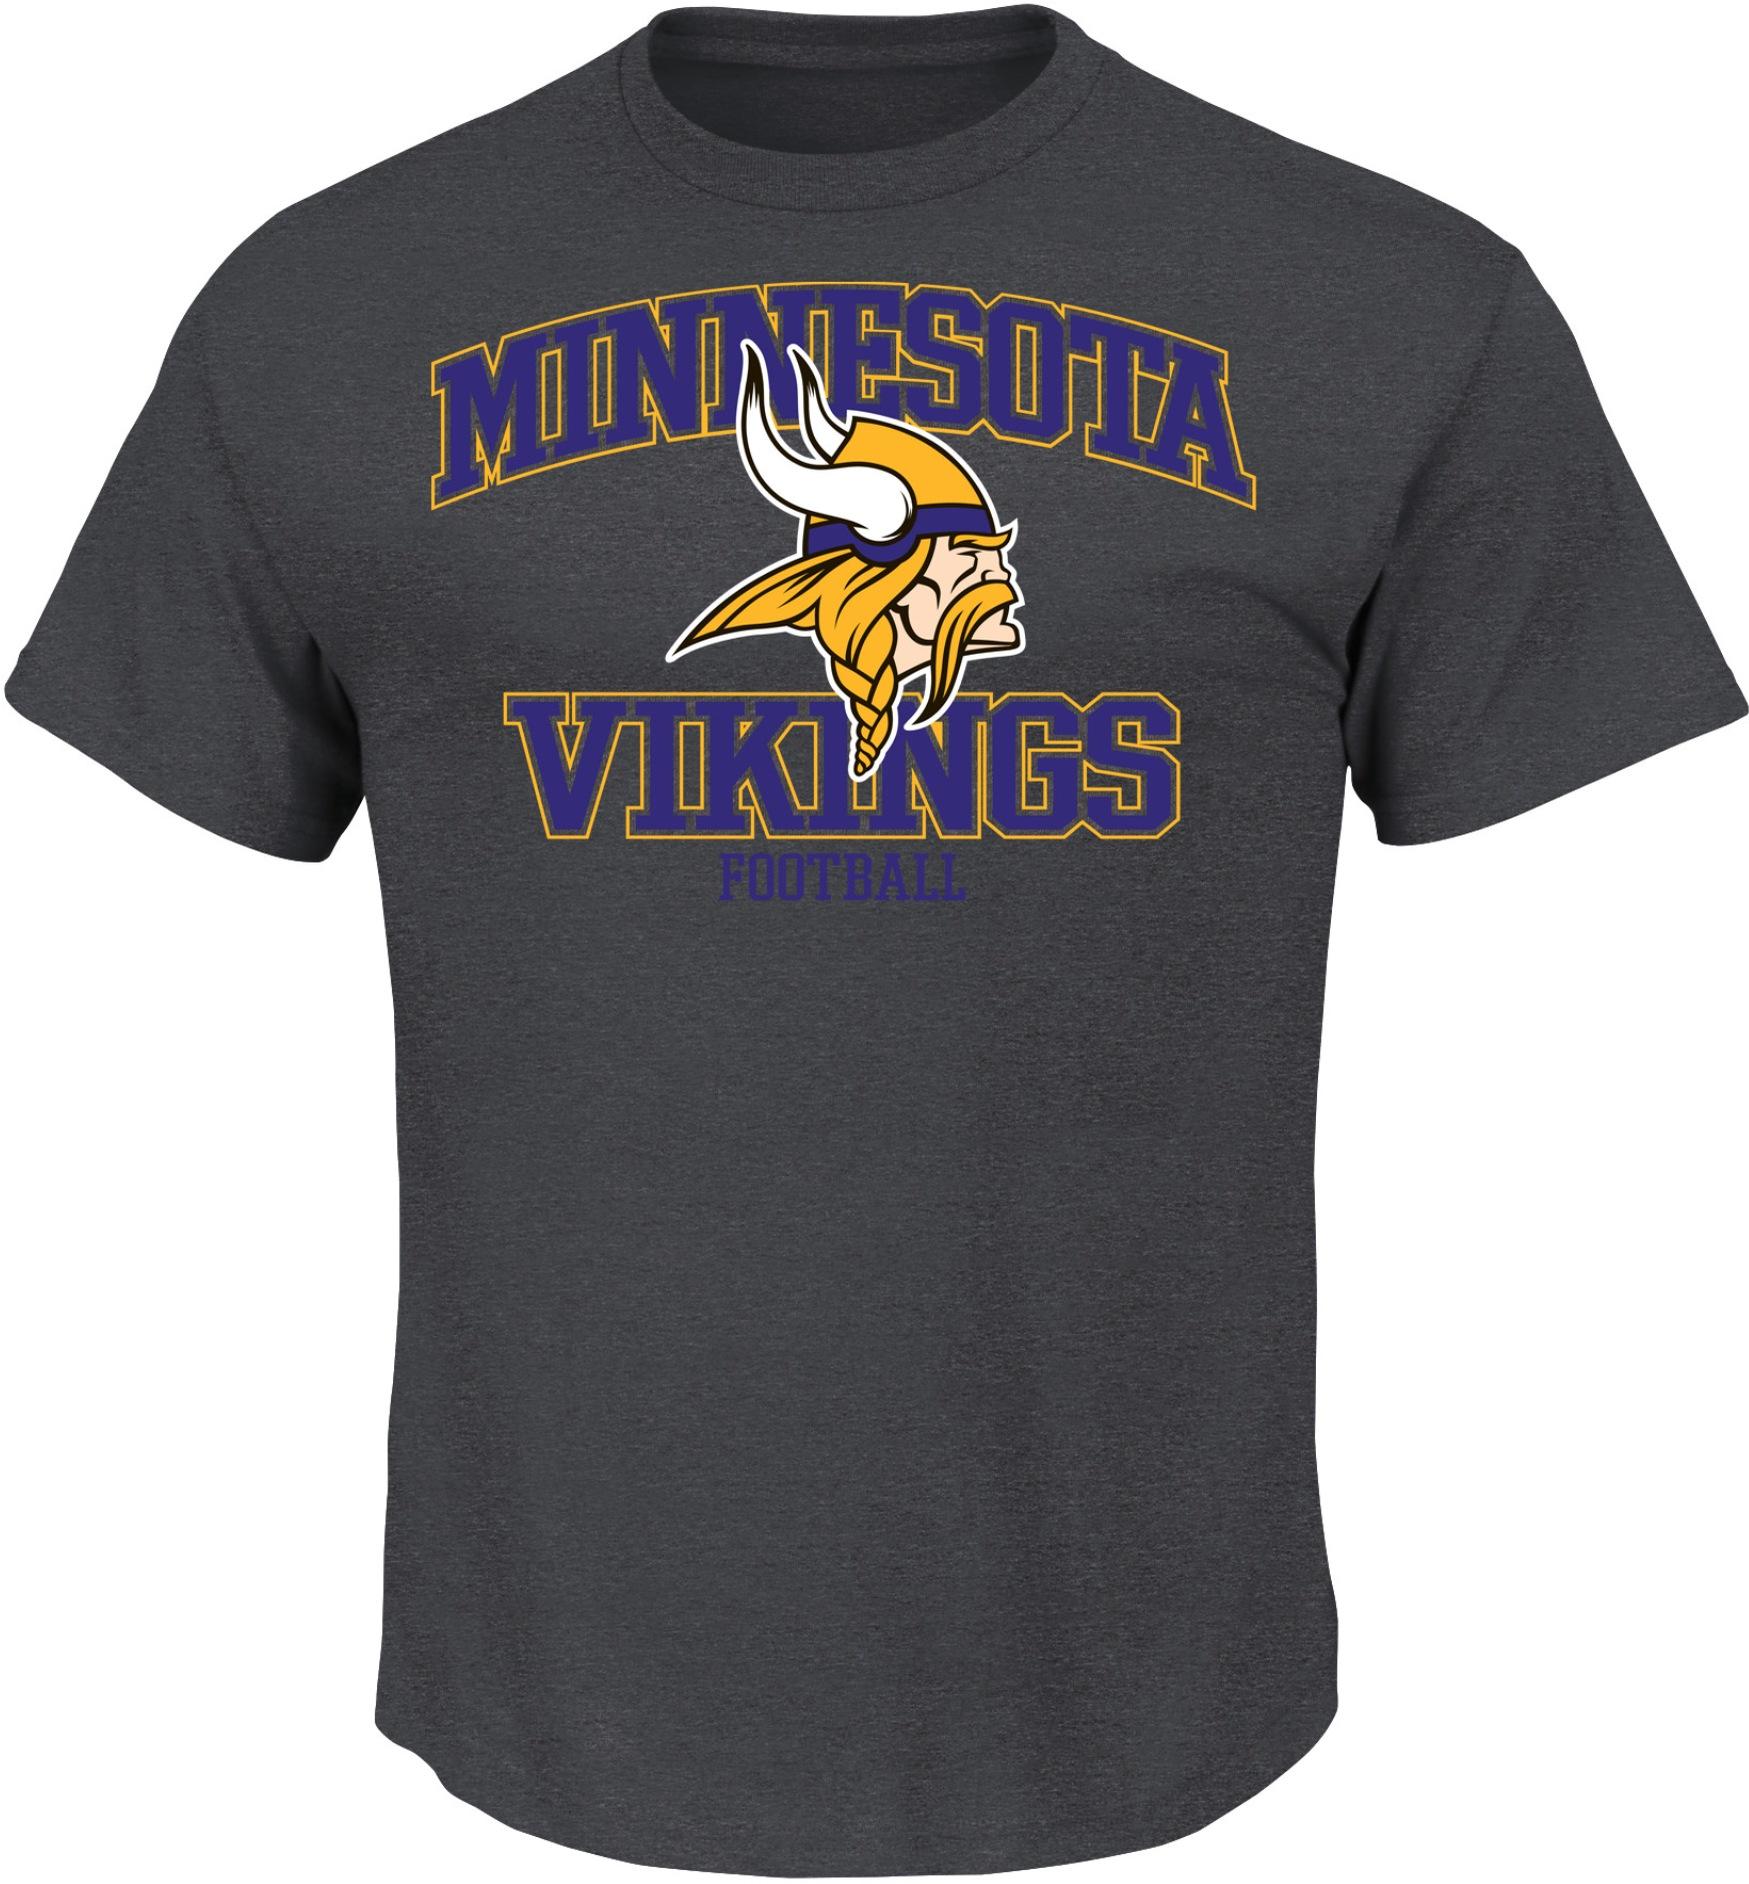 NFL Men's T-Shirt - Minnesota Vikings